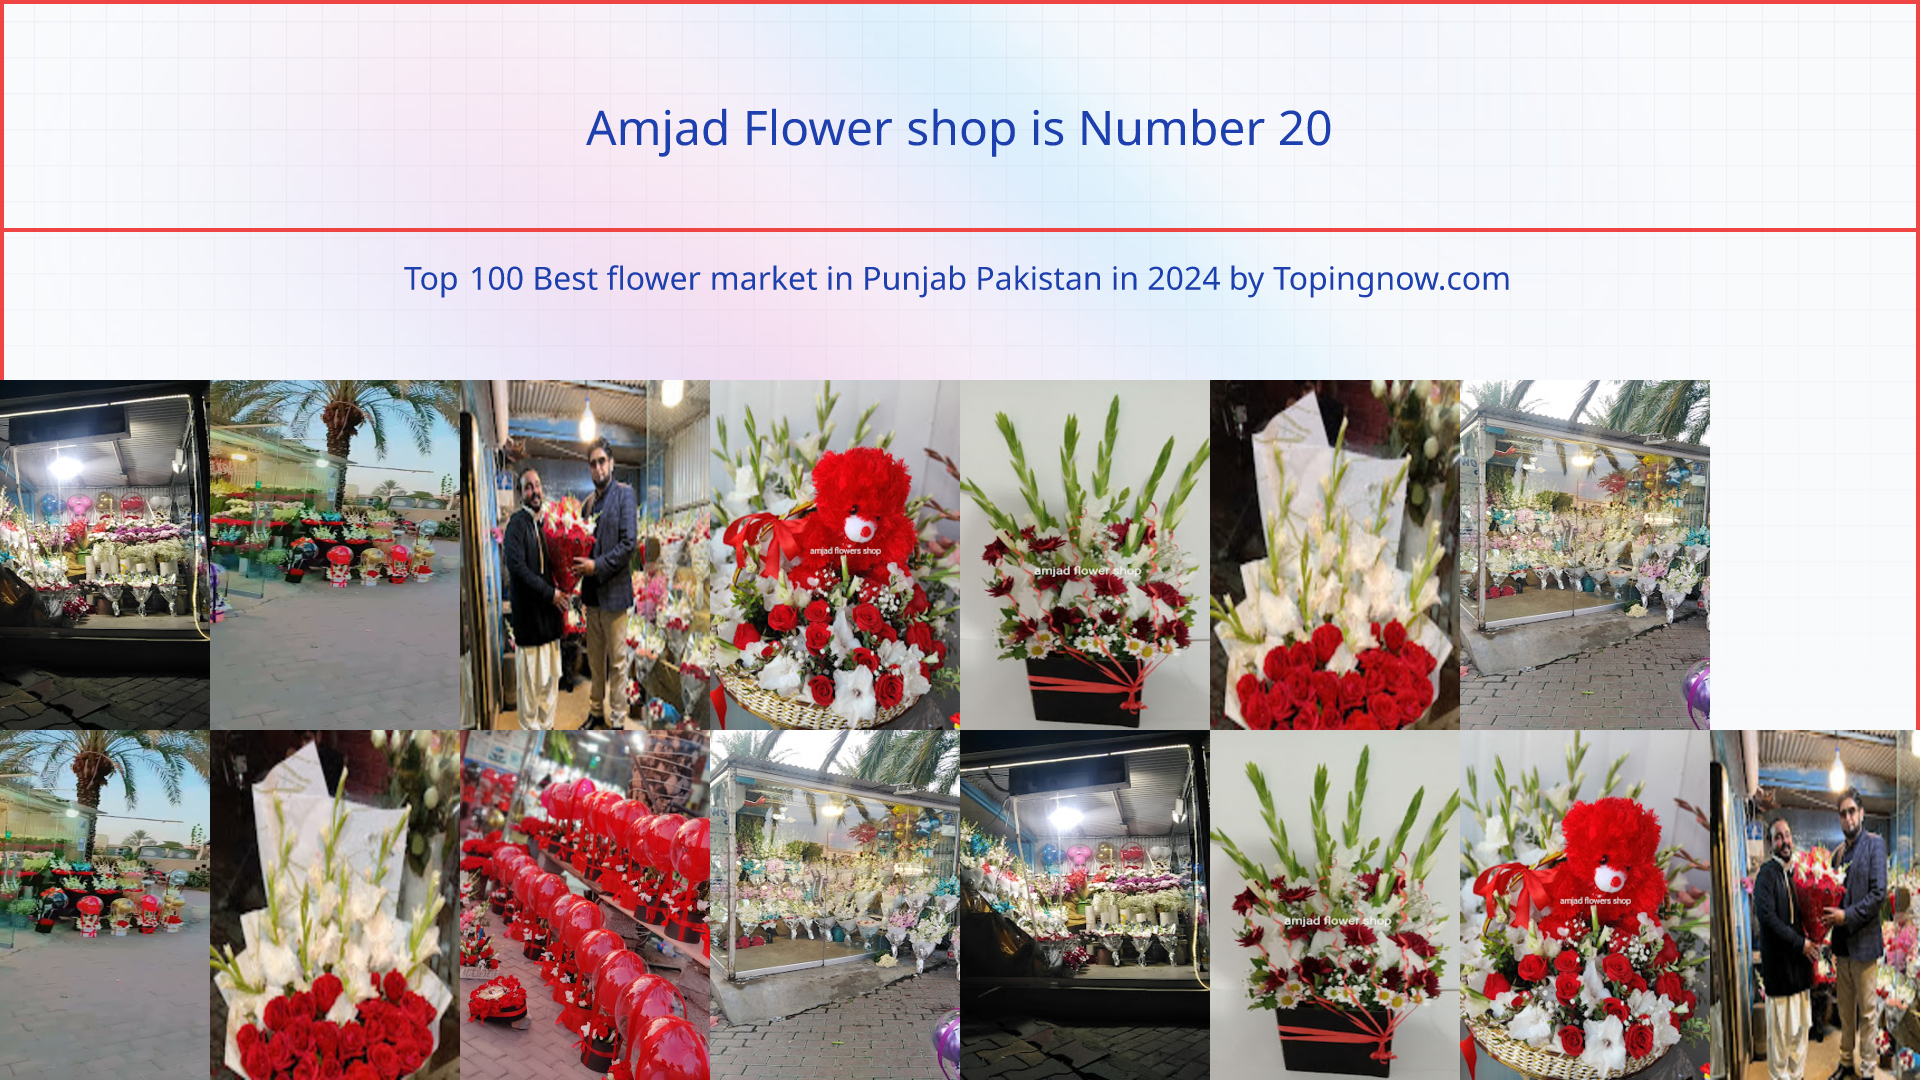 Amjad Flower shop: Top 100 Best flower market in Punjab Pakistan in 2024